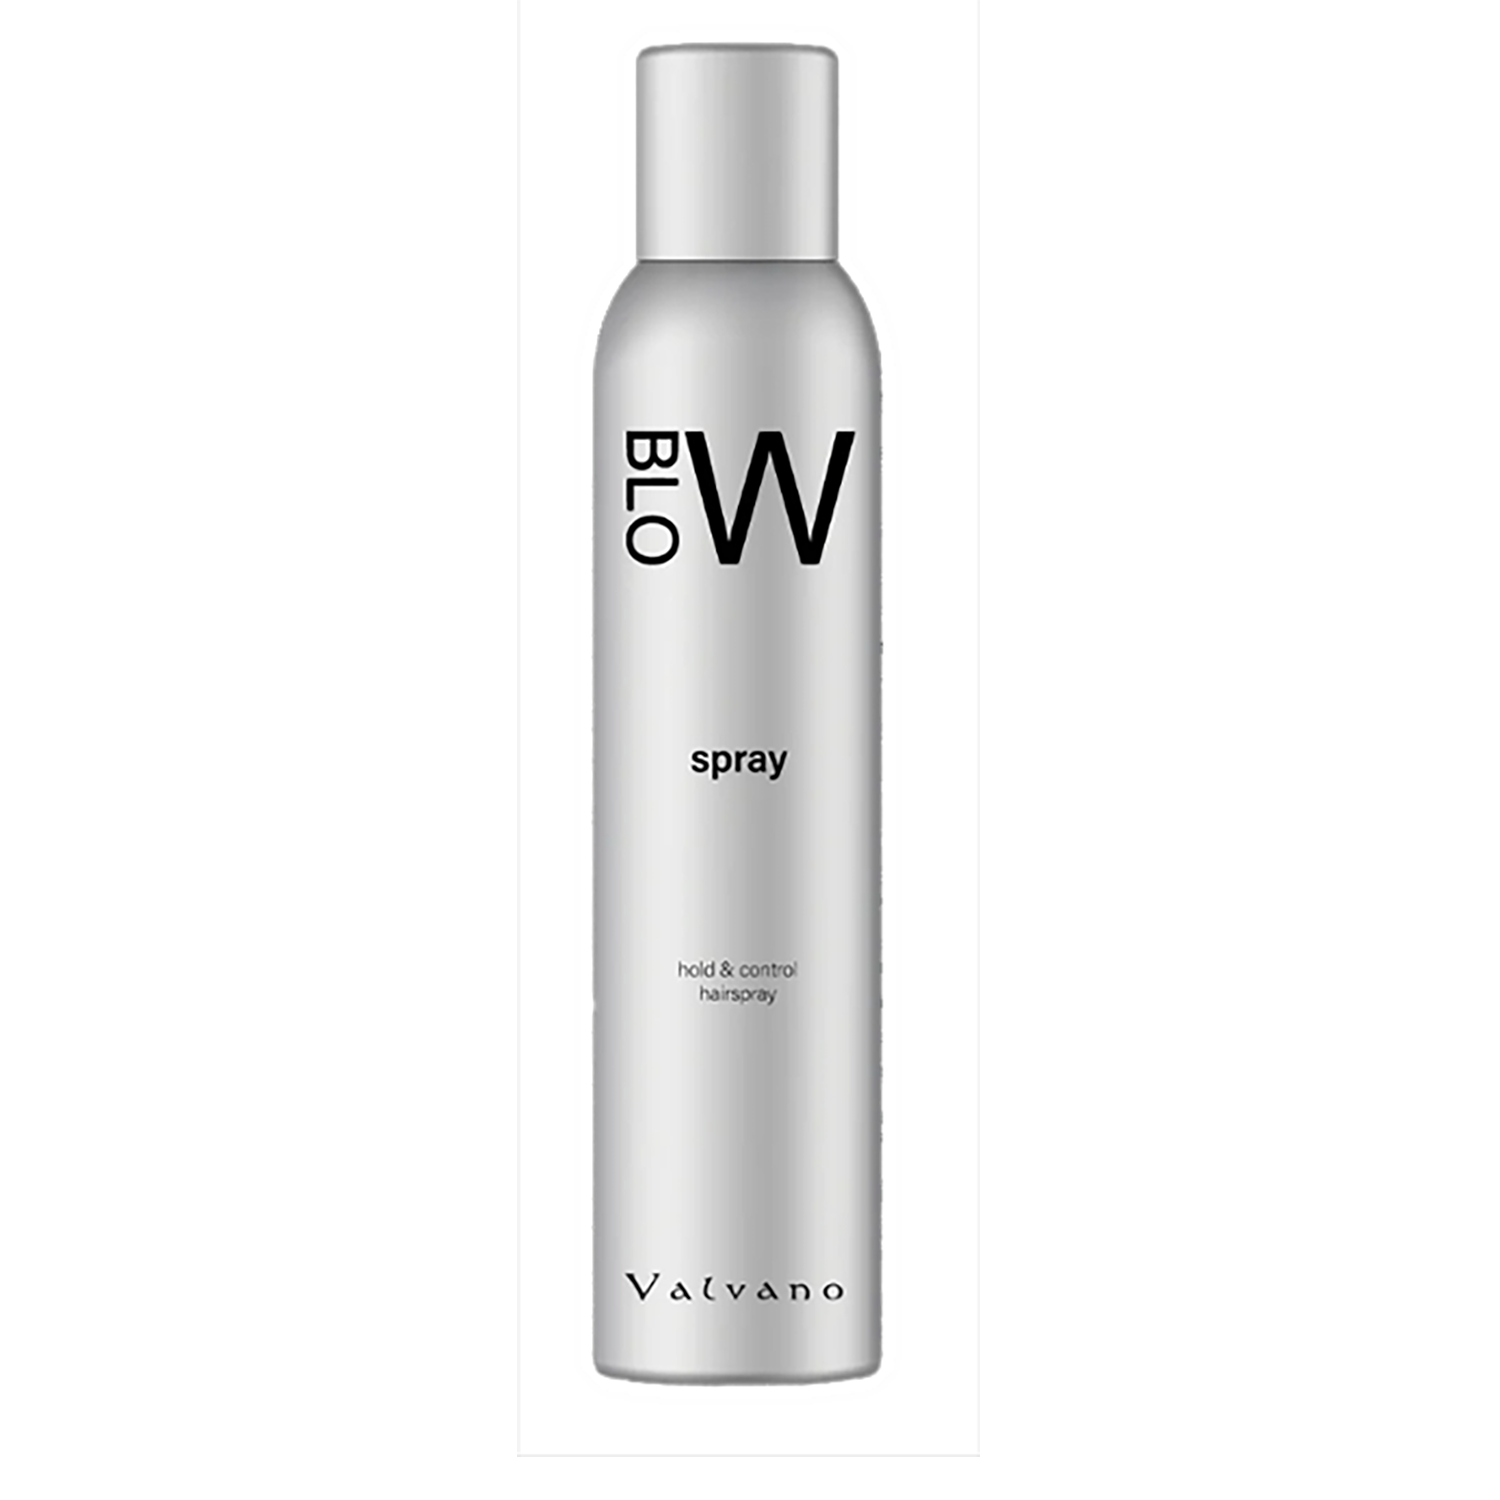 Valvano Spray - Creata Beauty - Professional Beauty Products